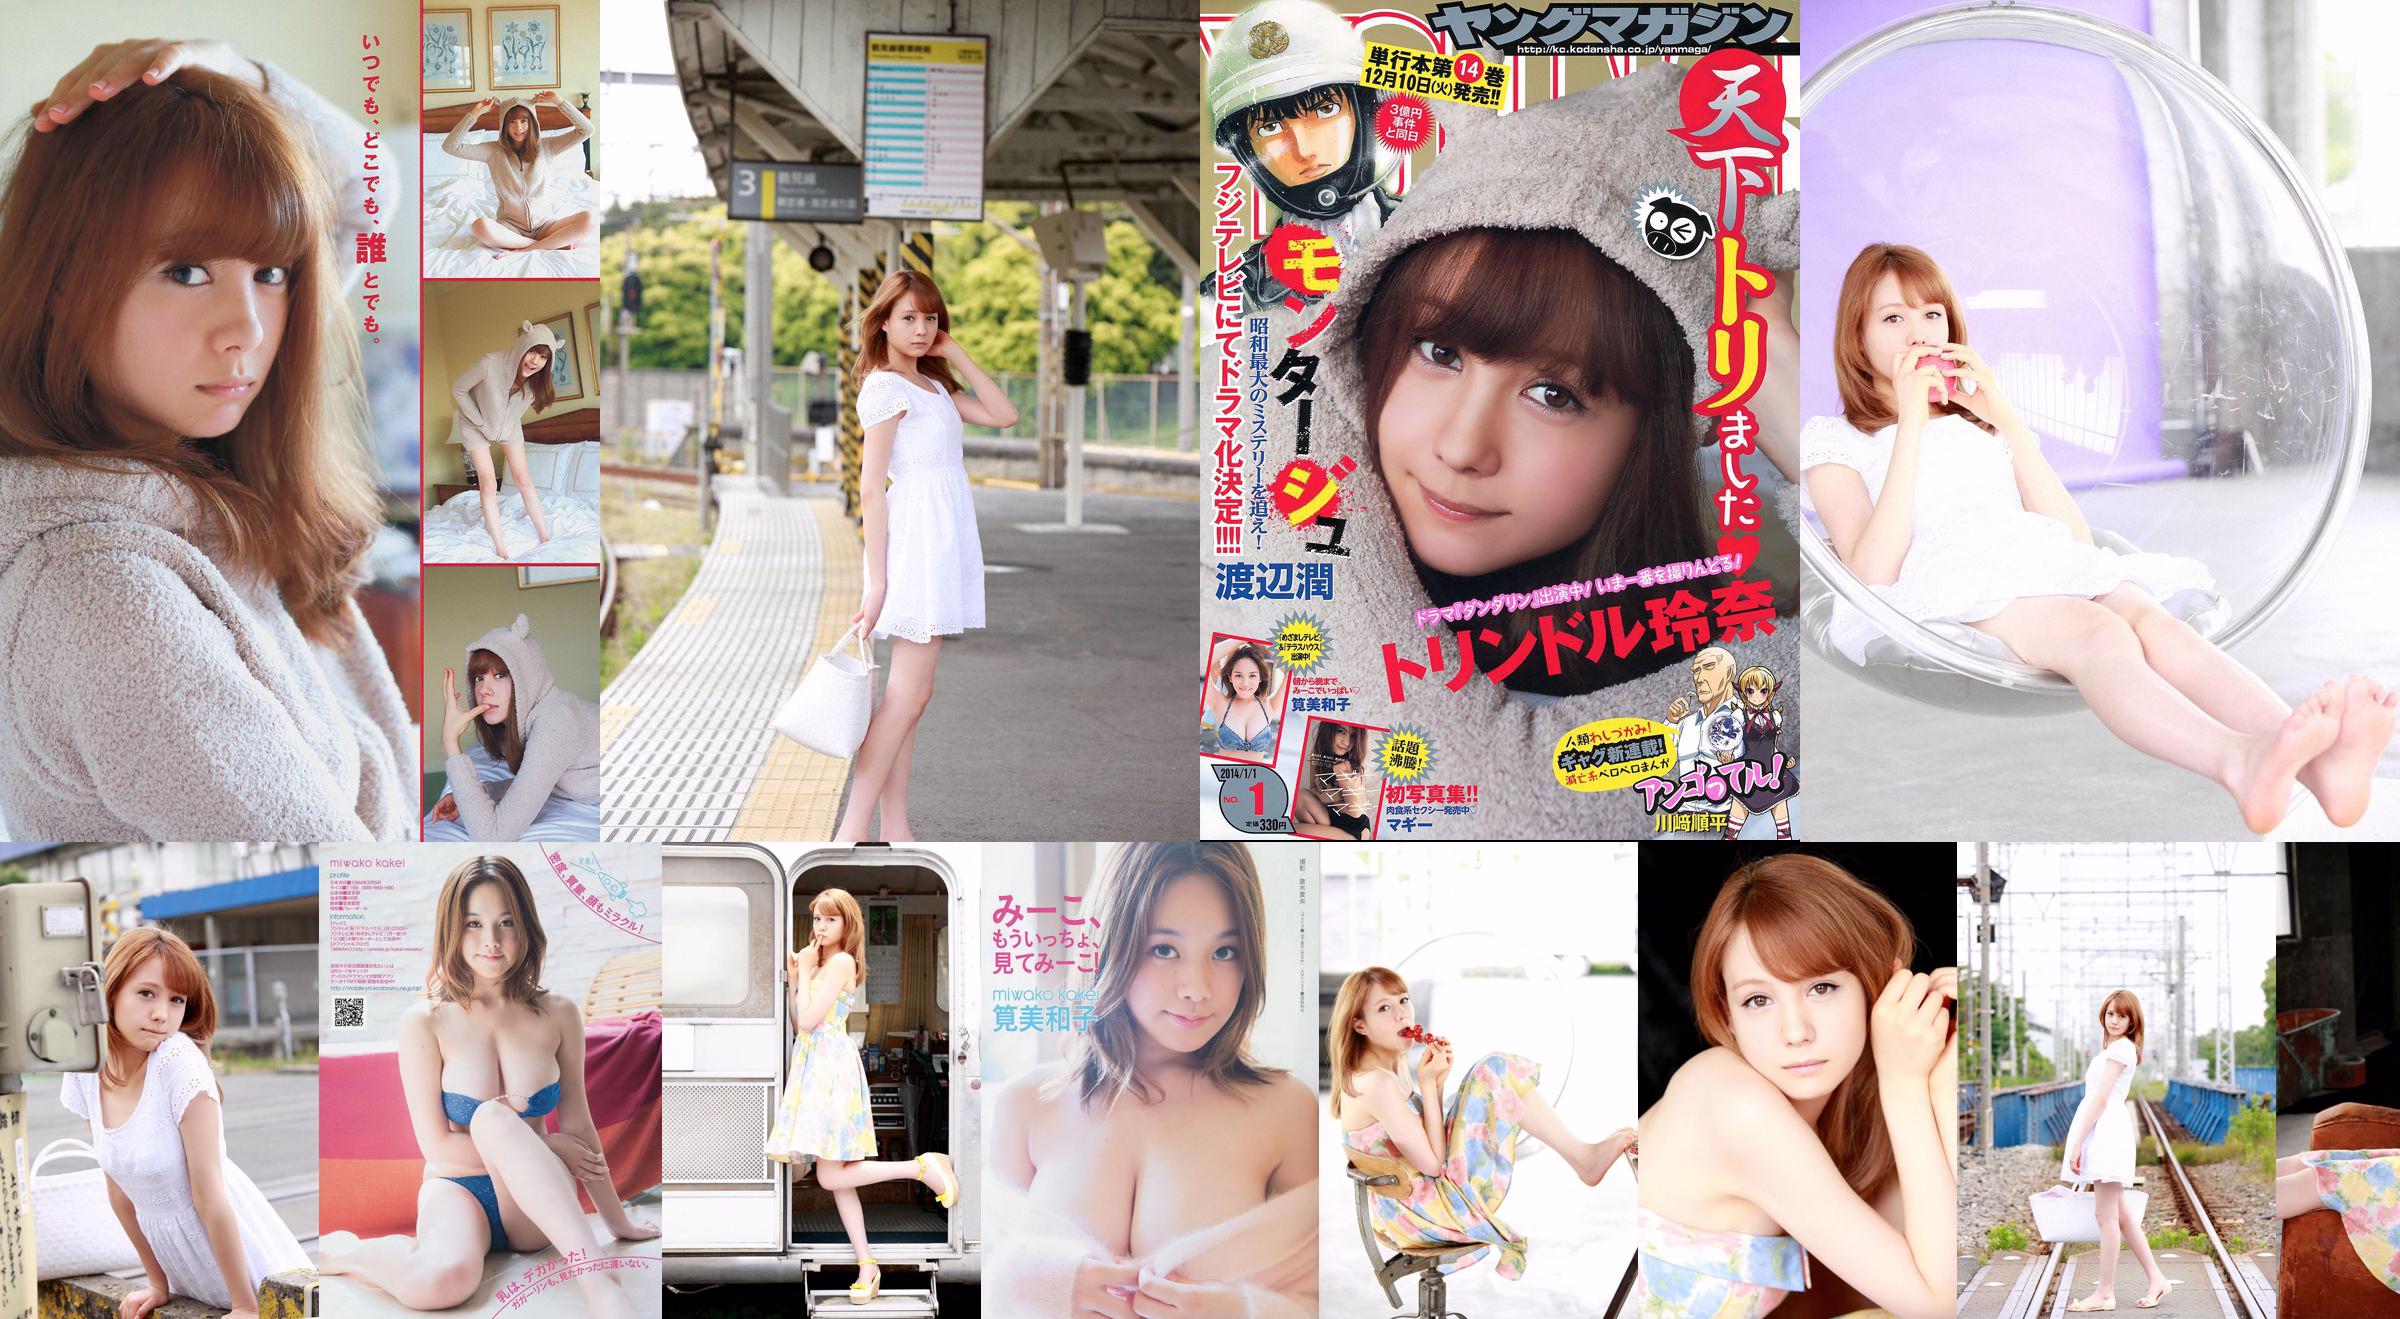 [Young Magazine] Reina Triendl Maggie Miwako Kakei 2014 No.01 Photograph No.ed0eac Pagina 2